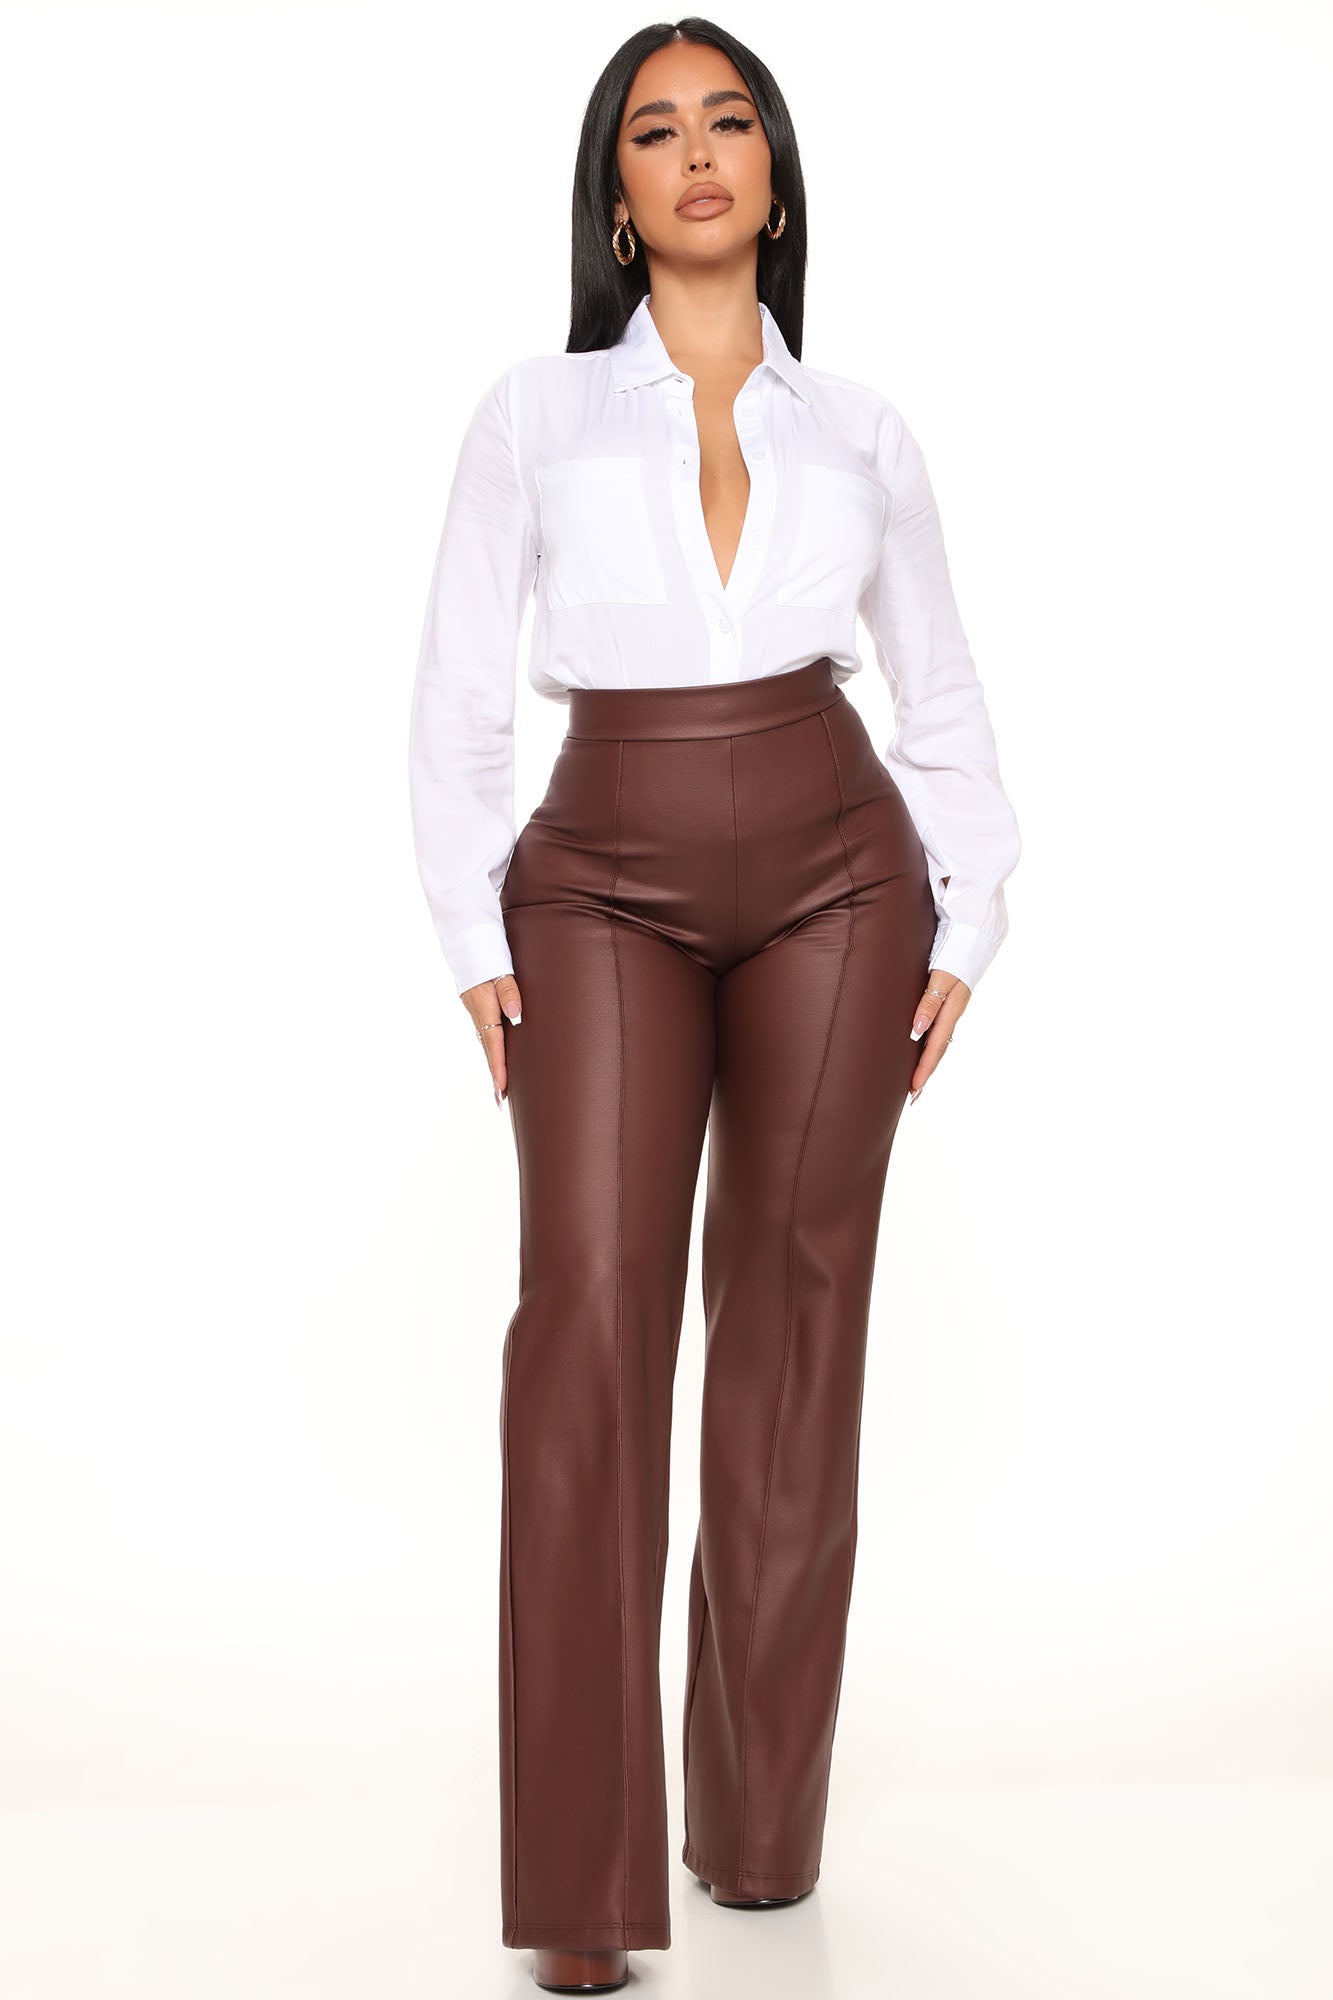 Victoria High Waisted Dress Pants Faux Leather 35 - Brown, Fashion Nova,  Pants